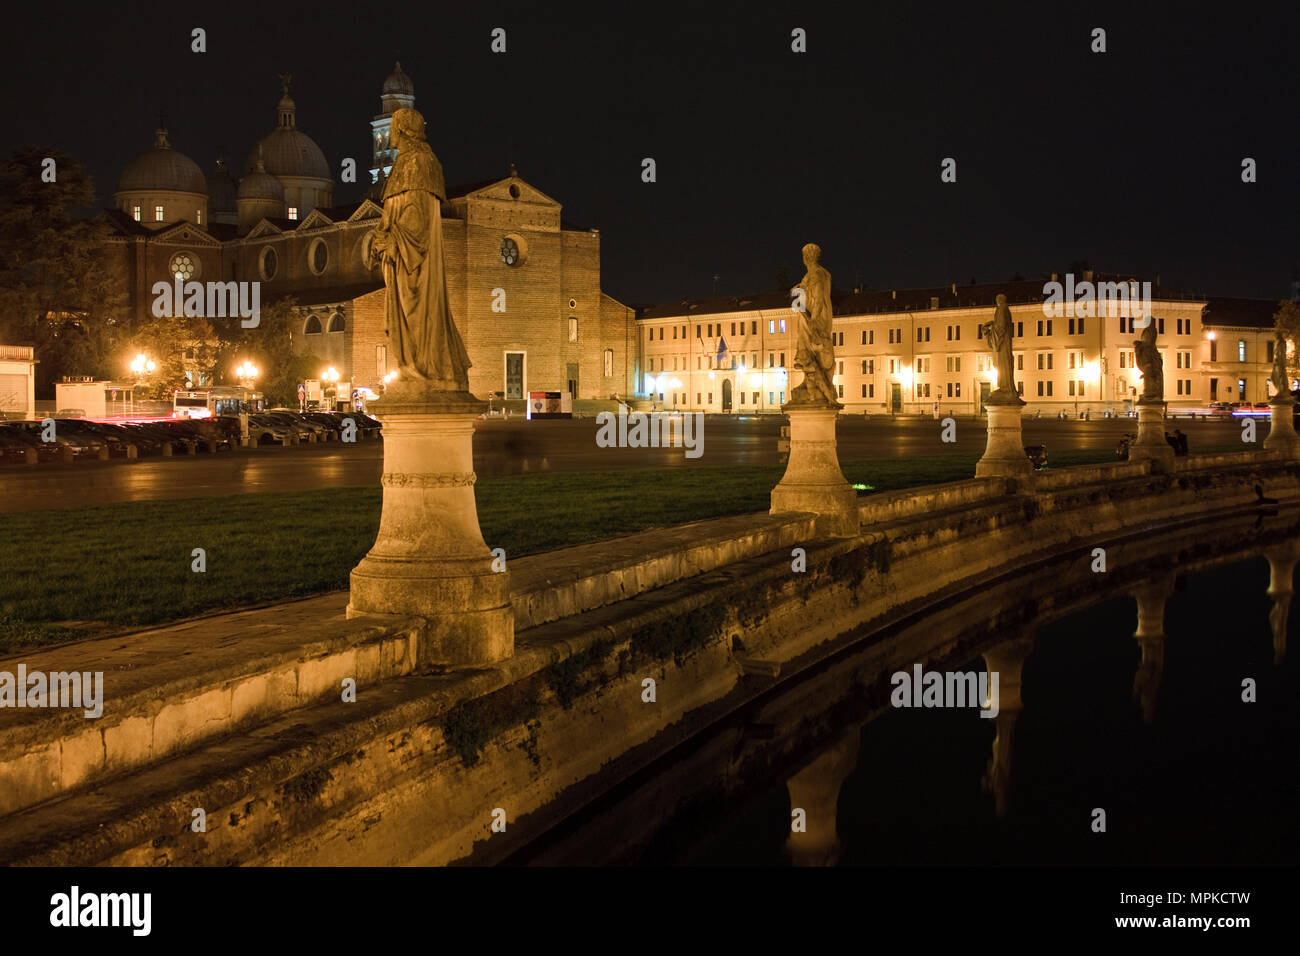 Prato della valle square in Padova at night Stock Photo